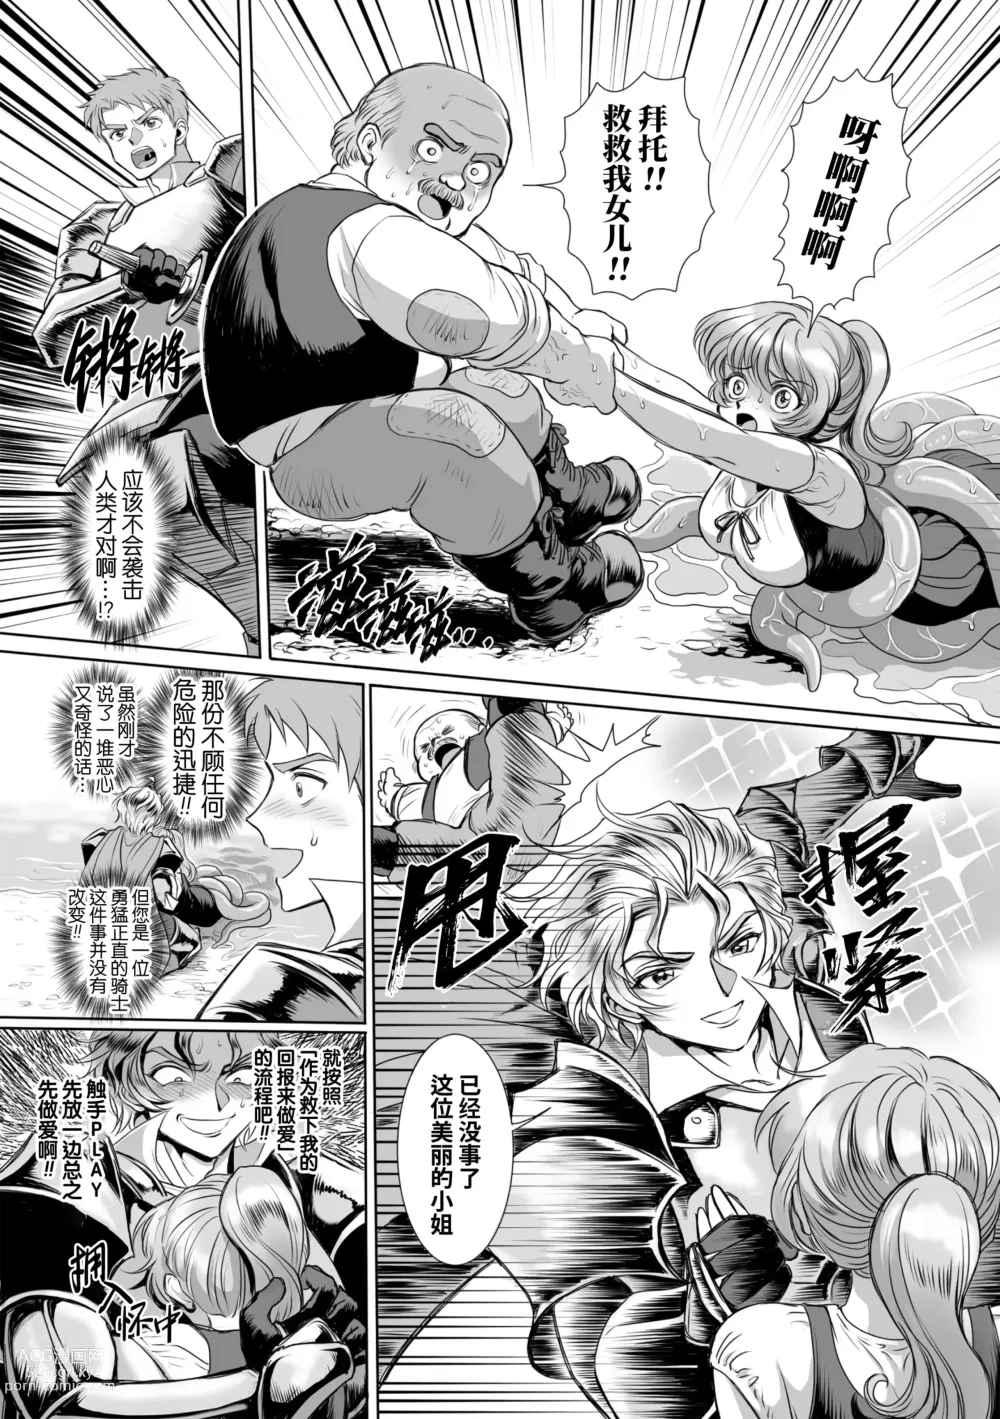 Page 10 of manga 附身奸骑士 斯塔里昂 被恶心男夺取意识凄惨高潮! (decensored)